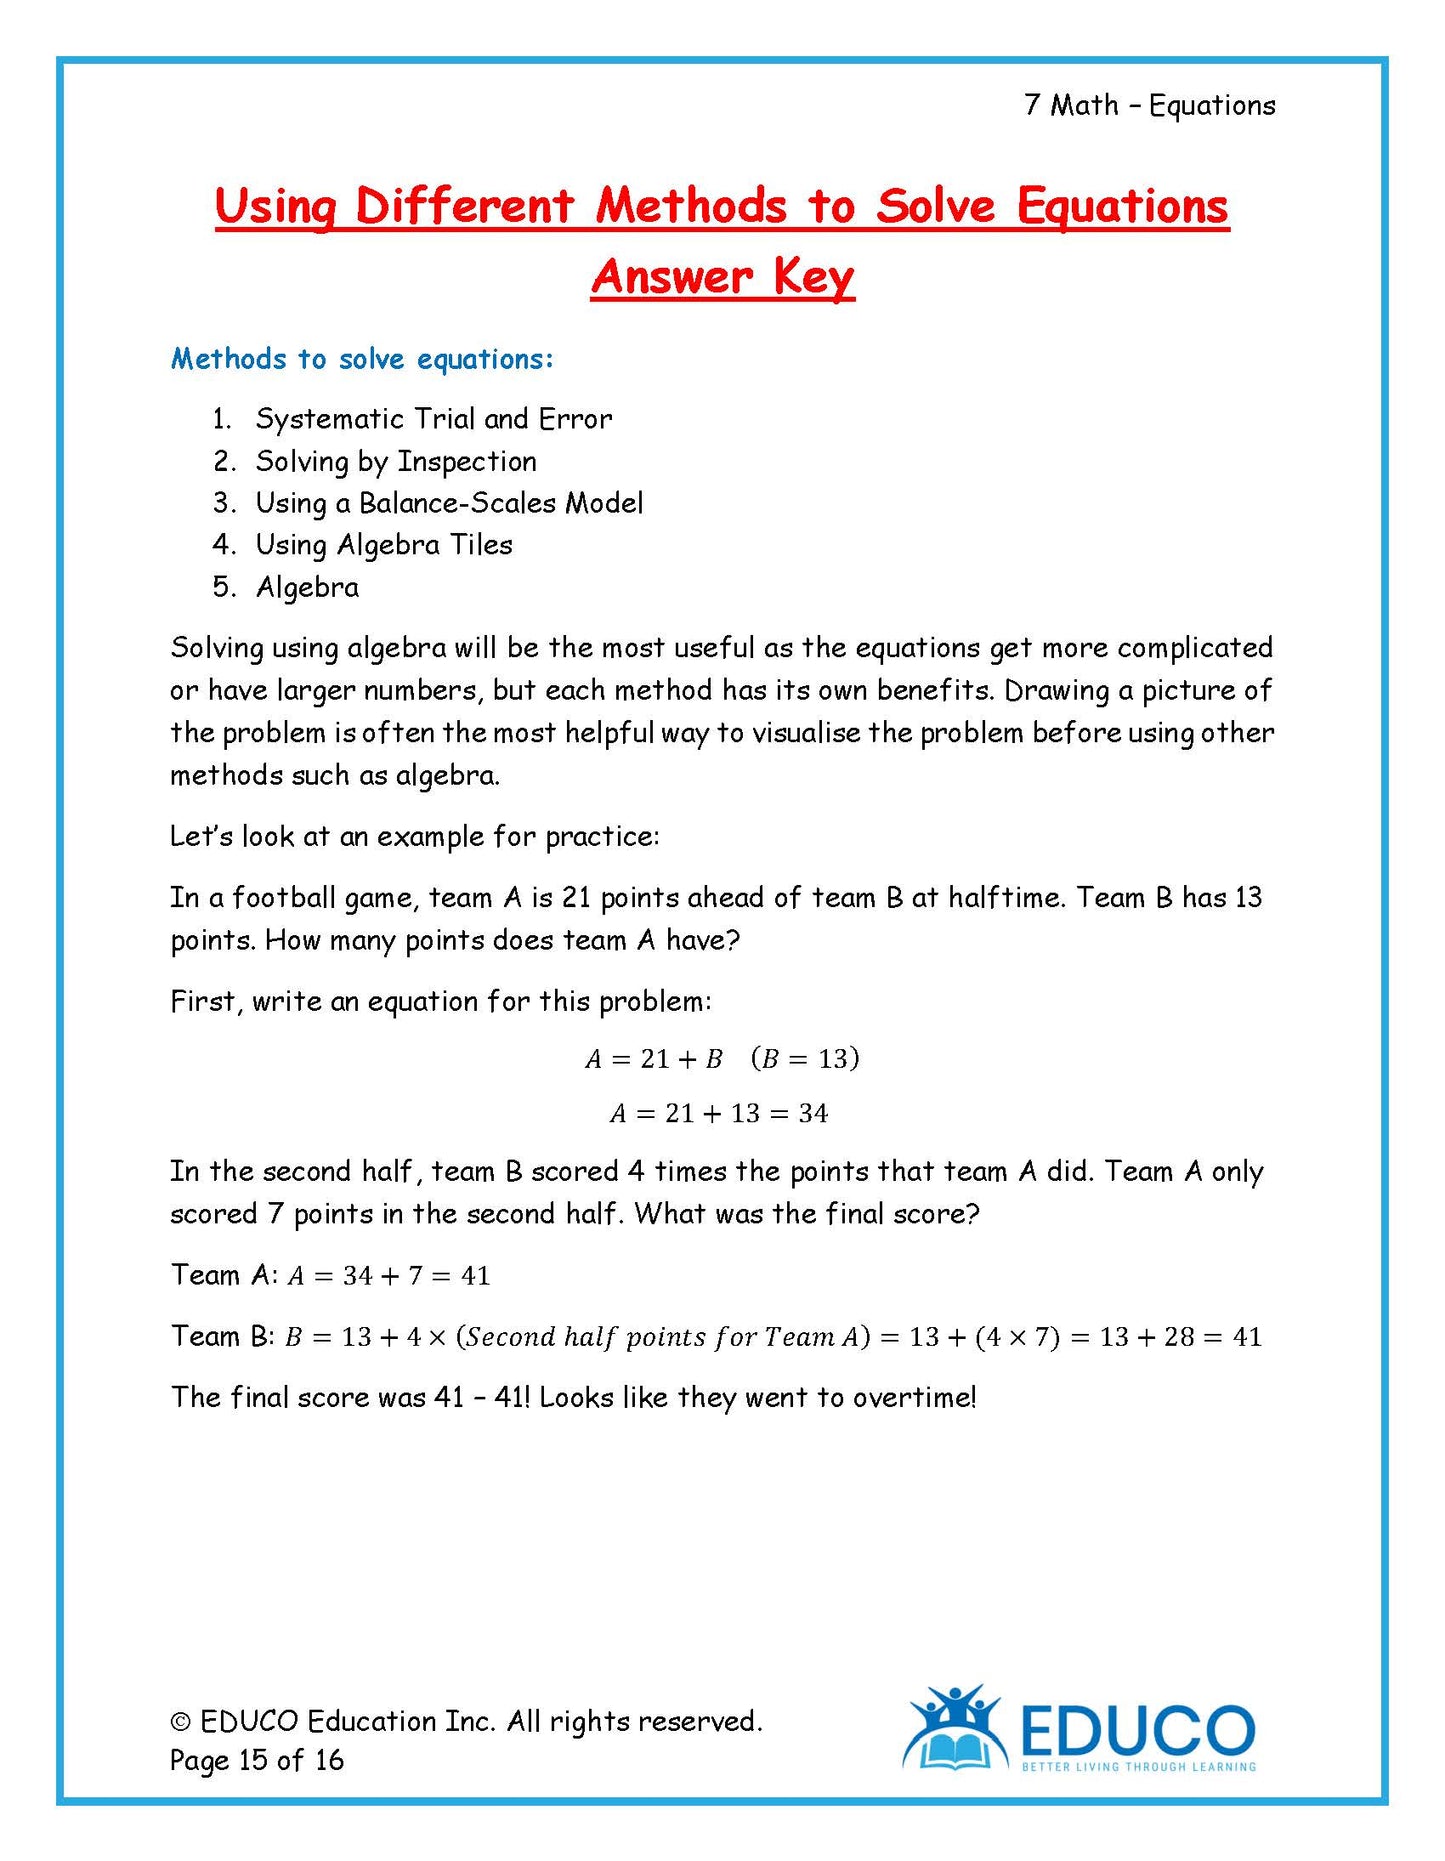 Unit 6: Equations - Grade 7 Math (Digital Download)